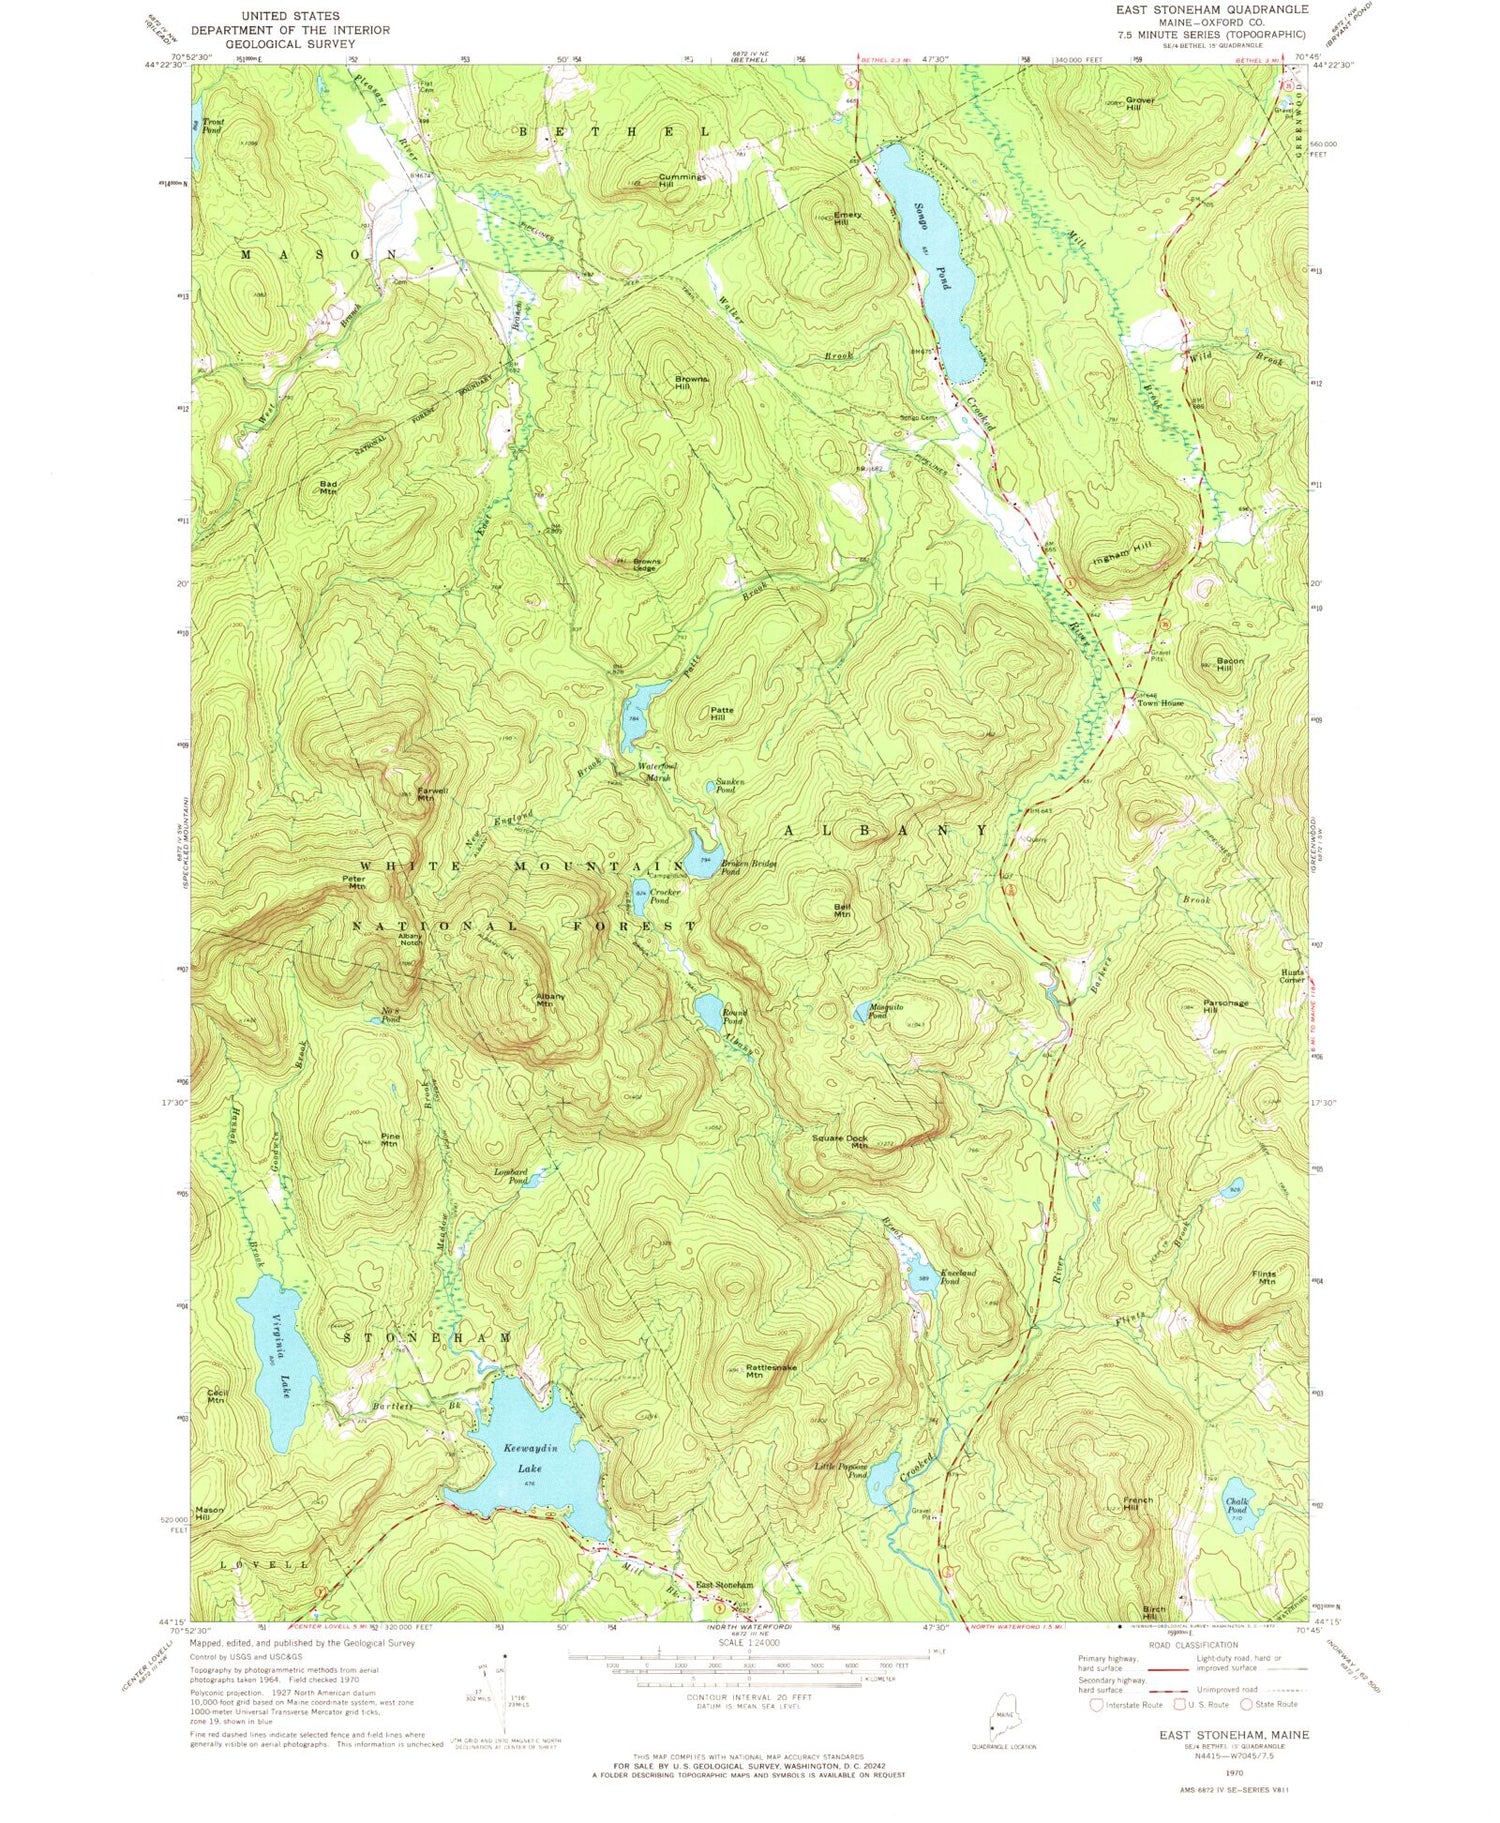 Classic USGS East Stoneham Maine 7.5'x7.5' Topo Map Image